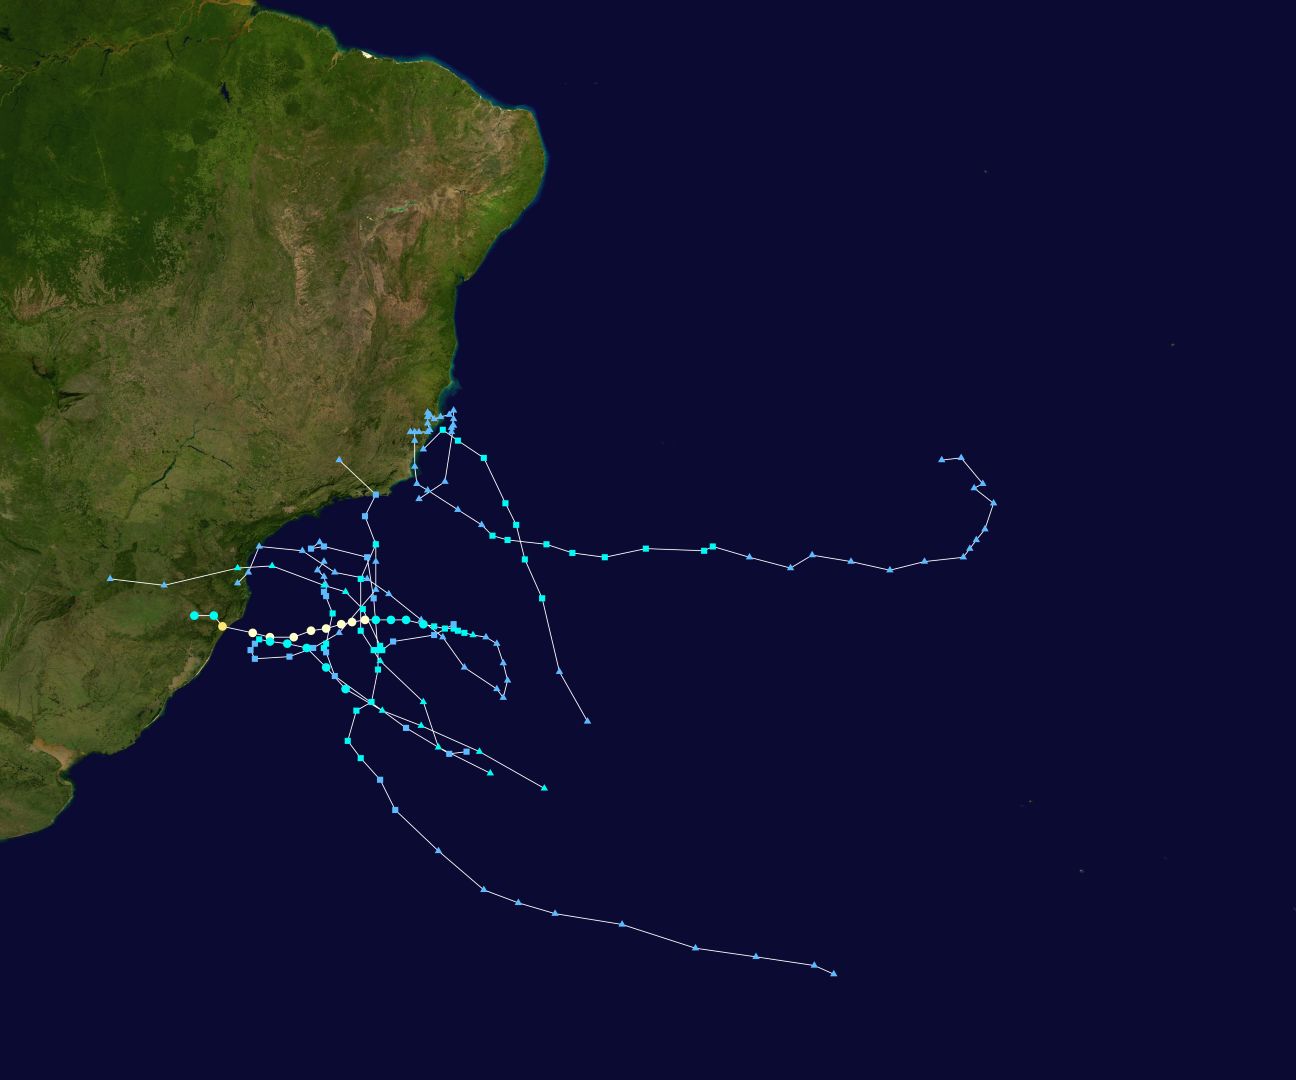 Това са всички (няколко) циклона и тропически бури, наблюдавани в Южния Атлантик за последните над 100 години